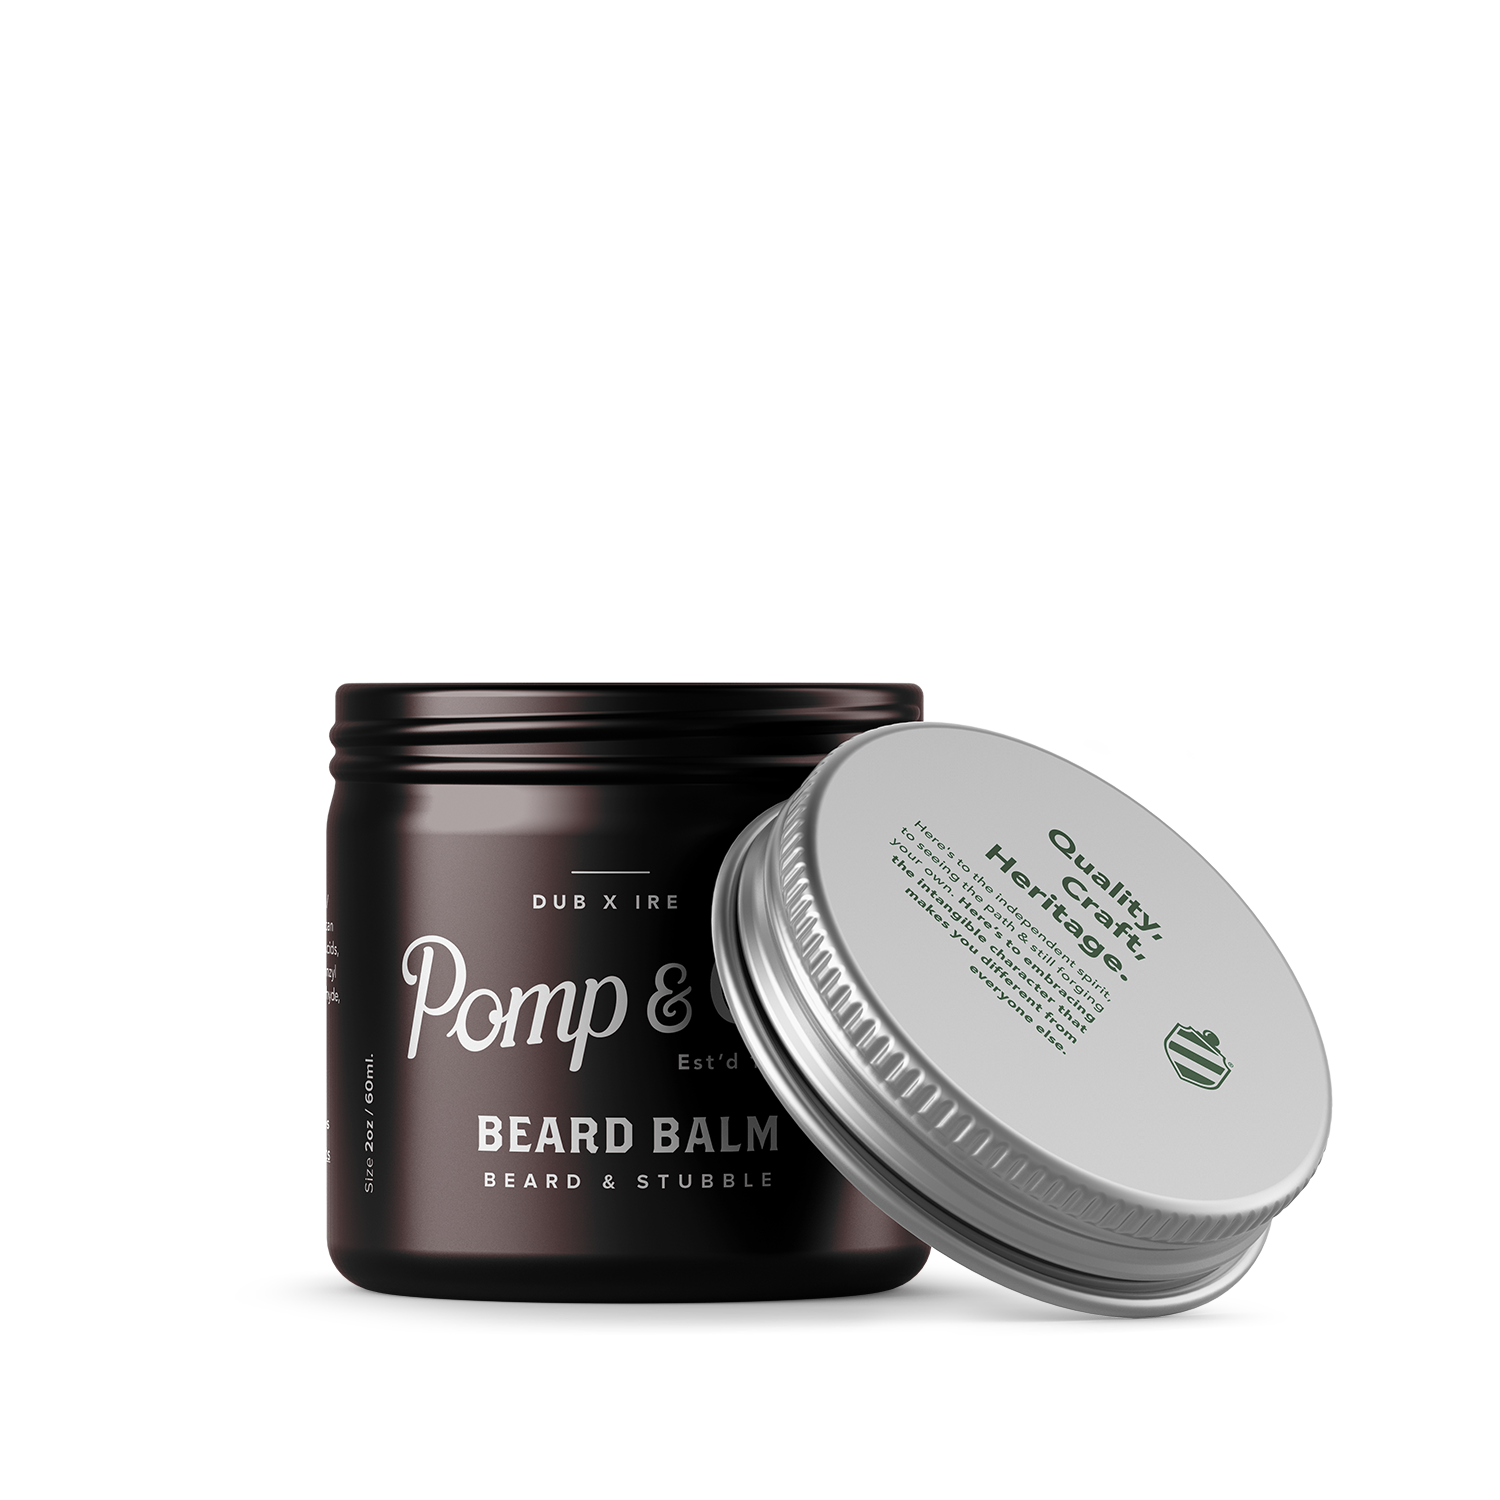 Beard Balm 60ml for Men - €23.00 | Pomp & Co.